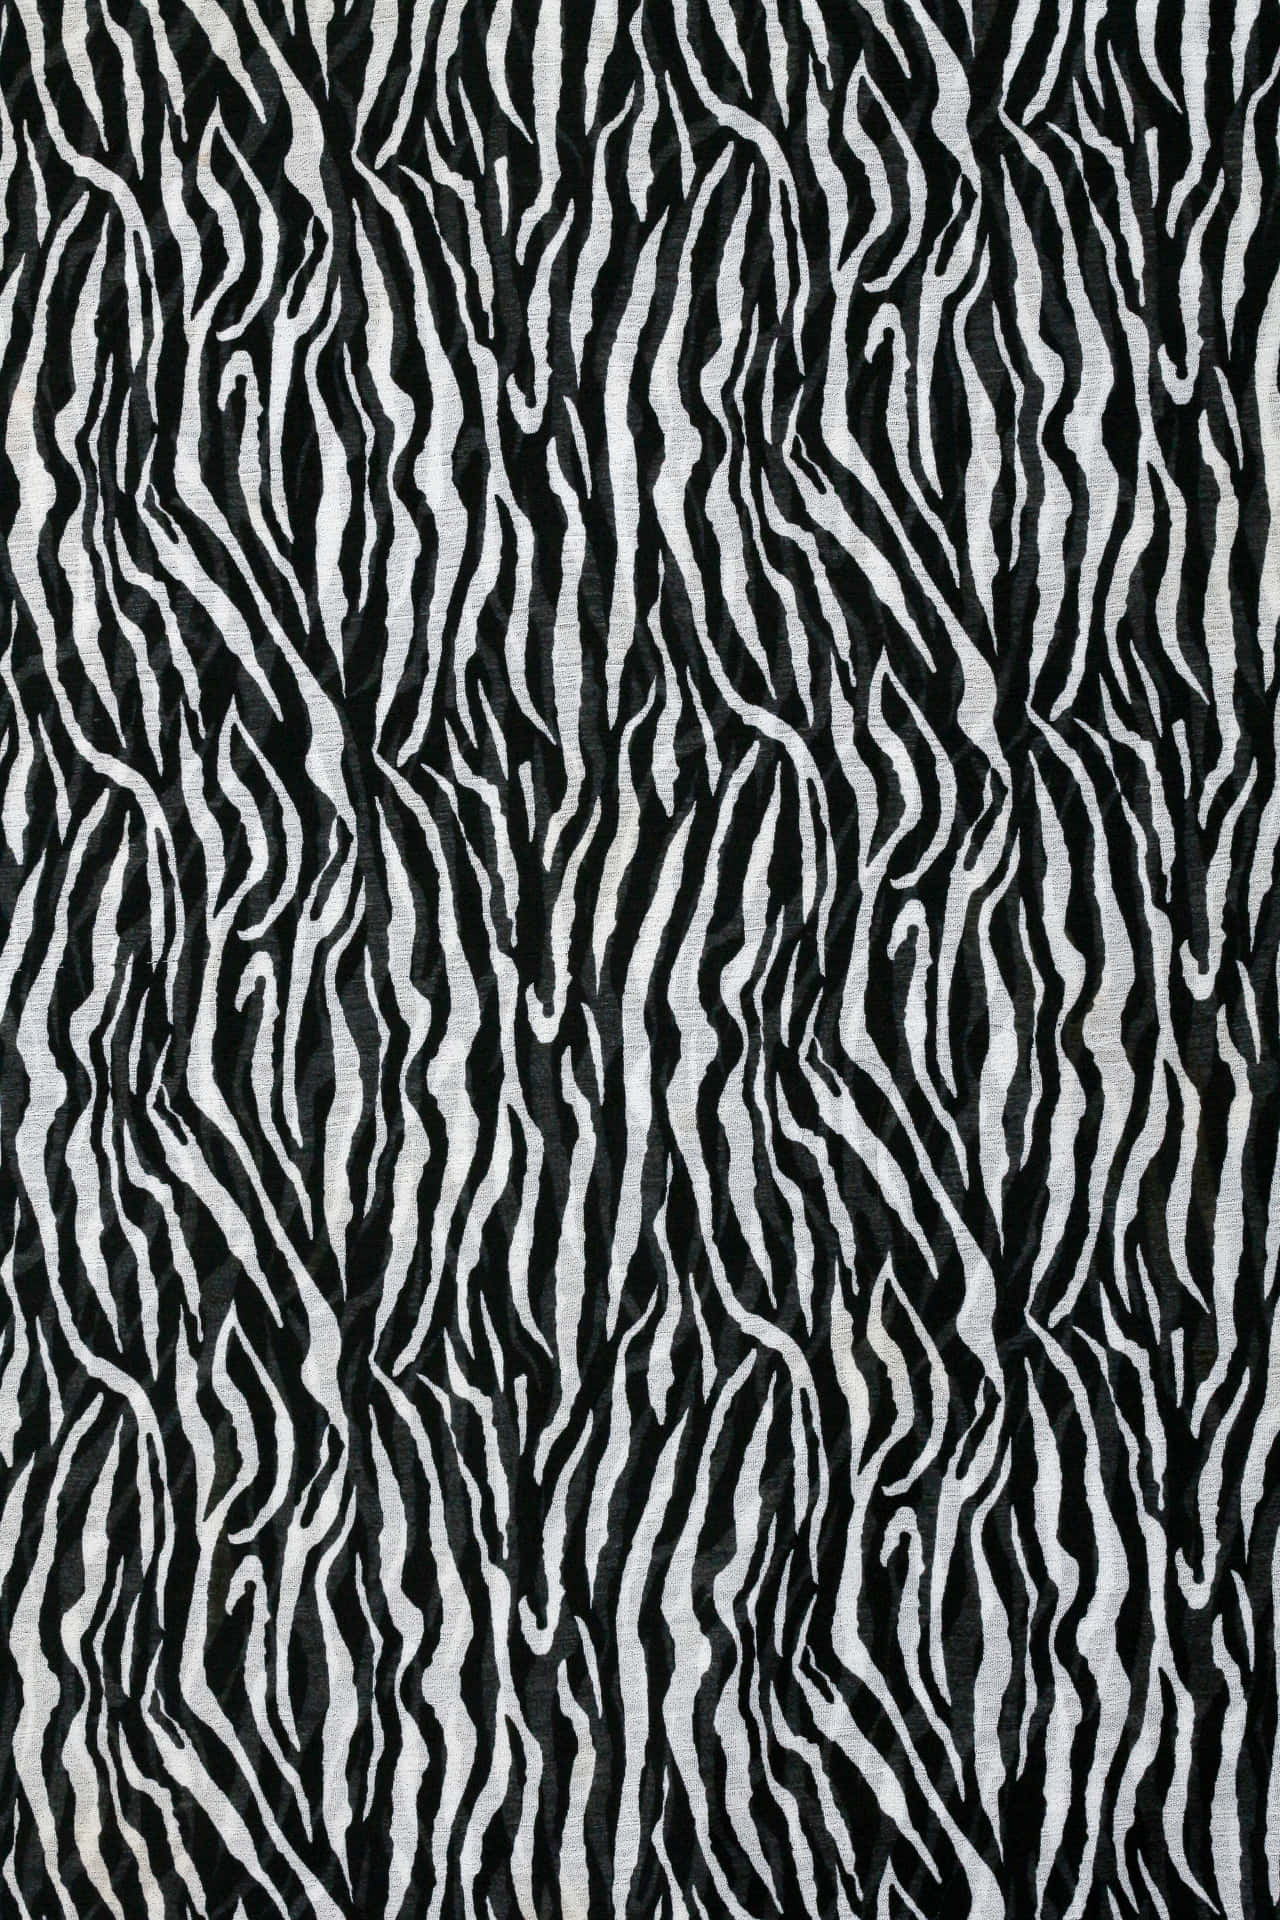 Ensvart Och Vit Zebrafälttyg Wallpaper